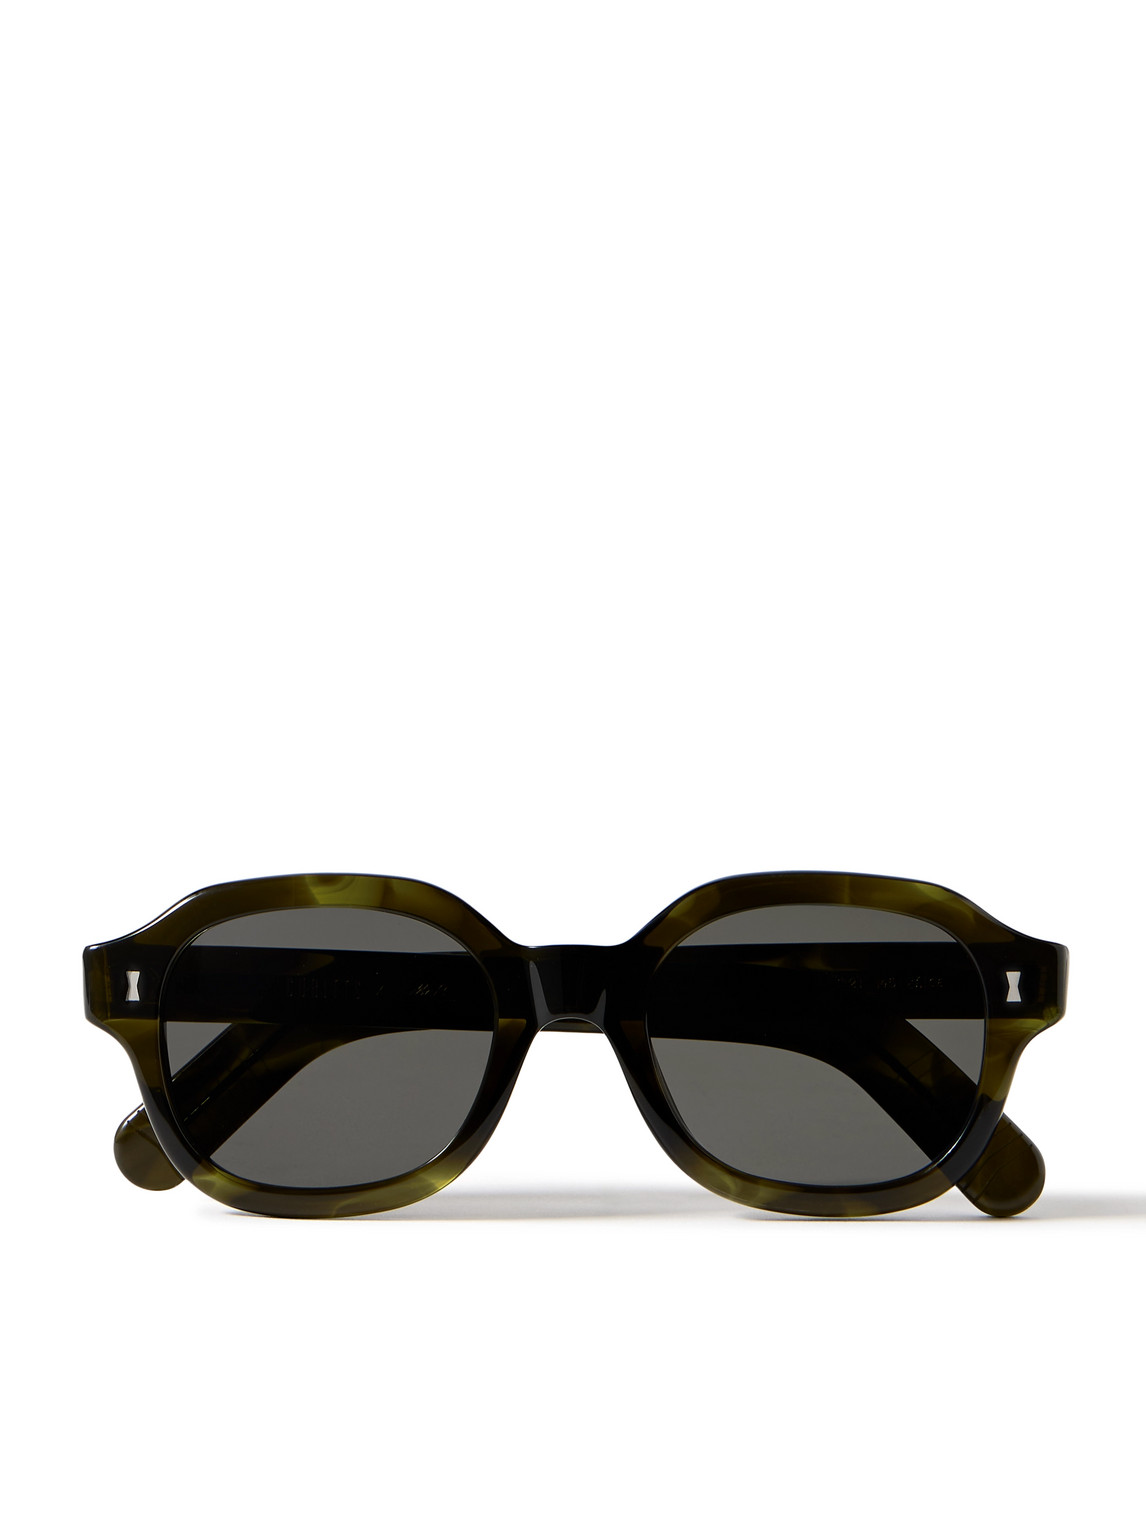 Cubitts Leirum Round-Frame Acetate Sunglasses